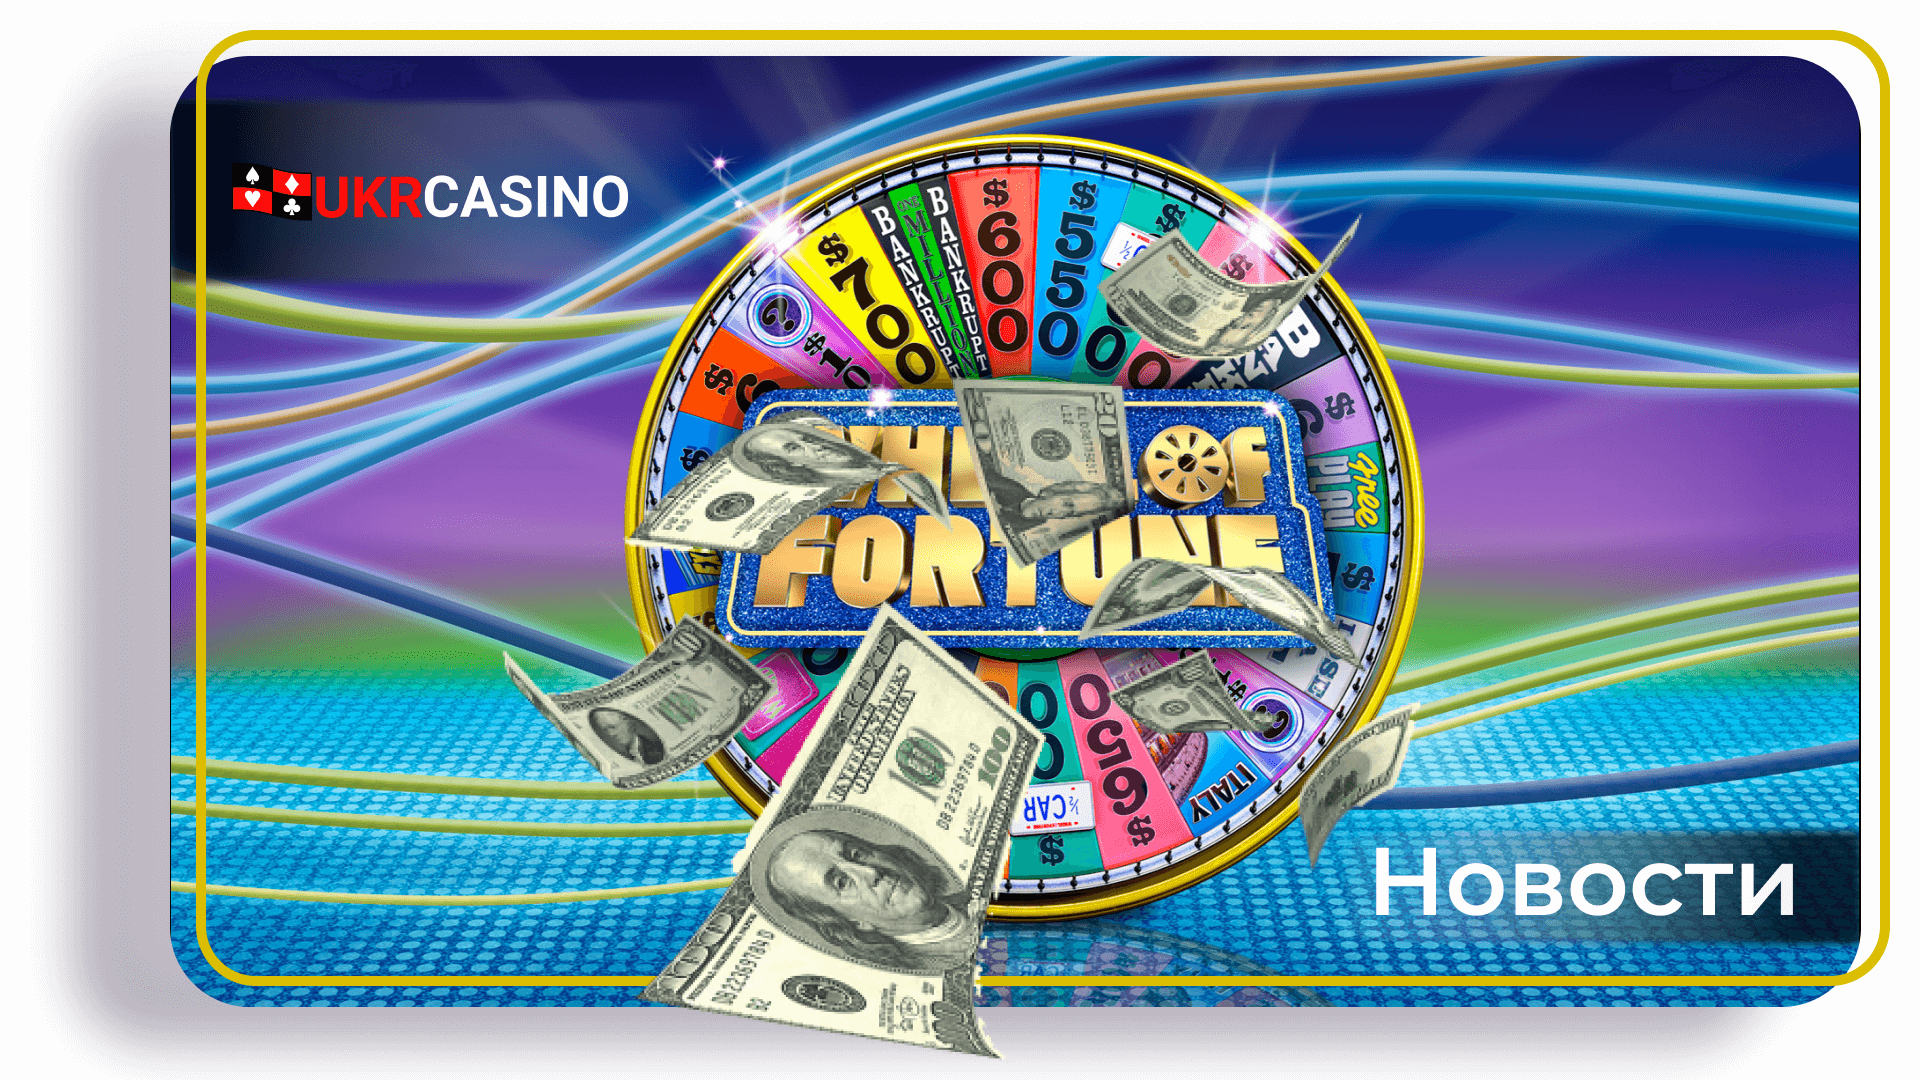 Американец выиграл более миллиона долларов, поставив всего 5 долларов в одном из казино Лас-Вегаса